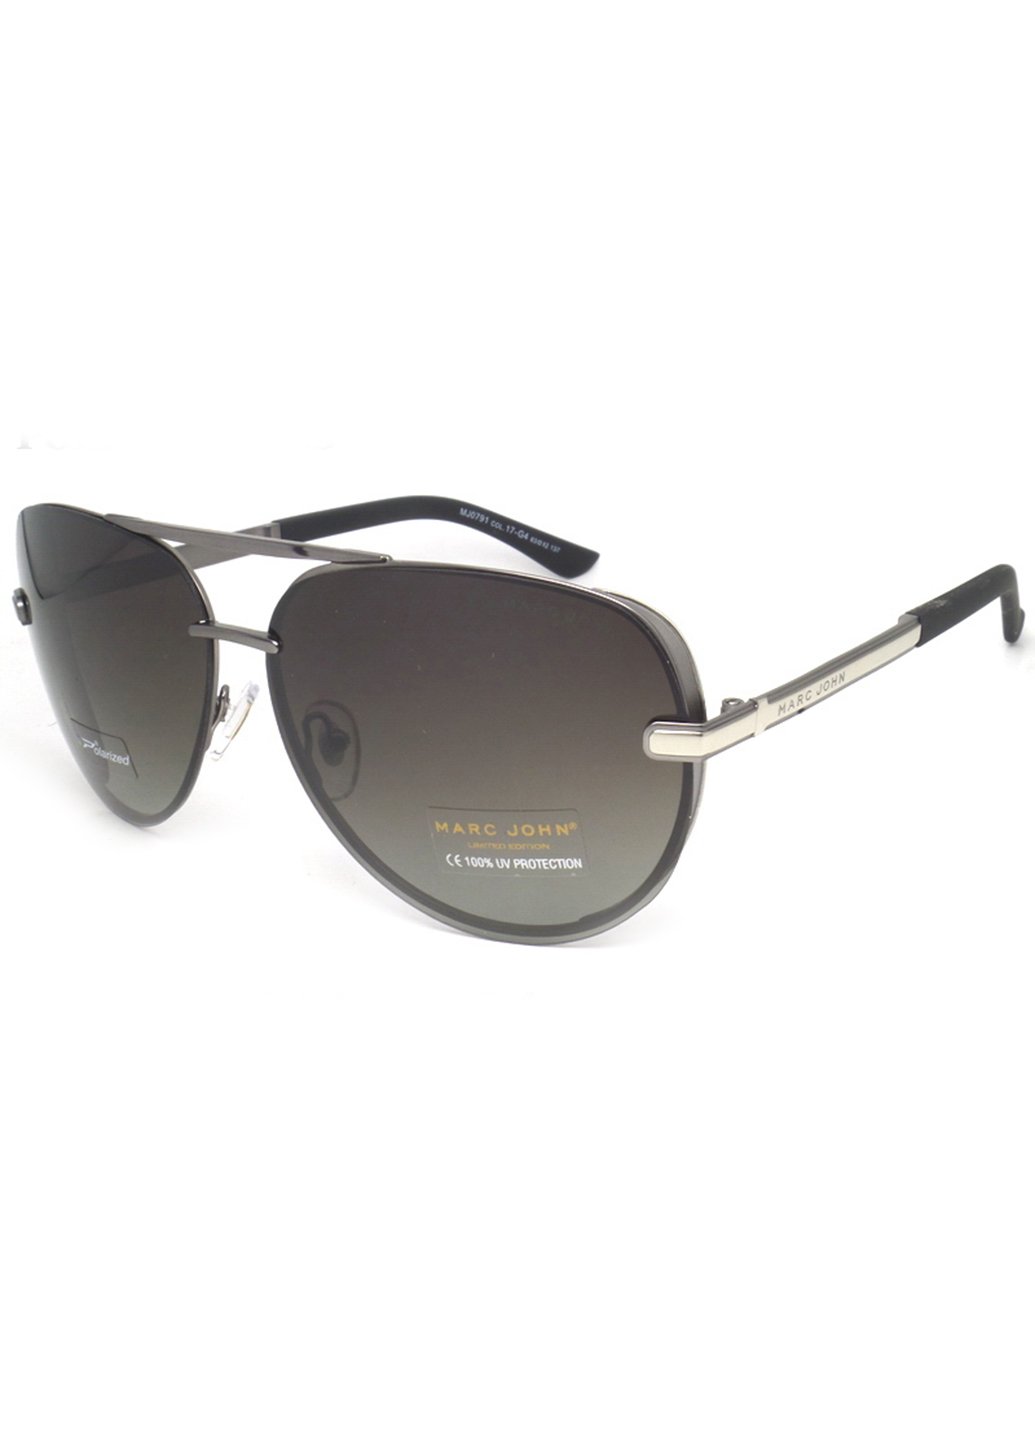 Купить Мужские солнцезащитные очки Marc John с поляризацией MJ0791 190016 - Серый в интернет-магазине